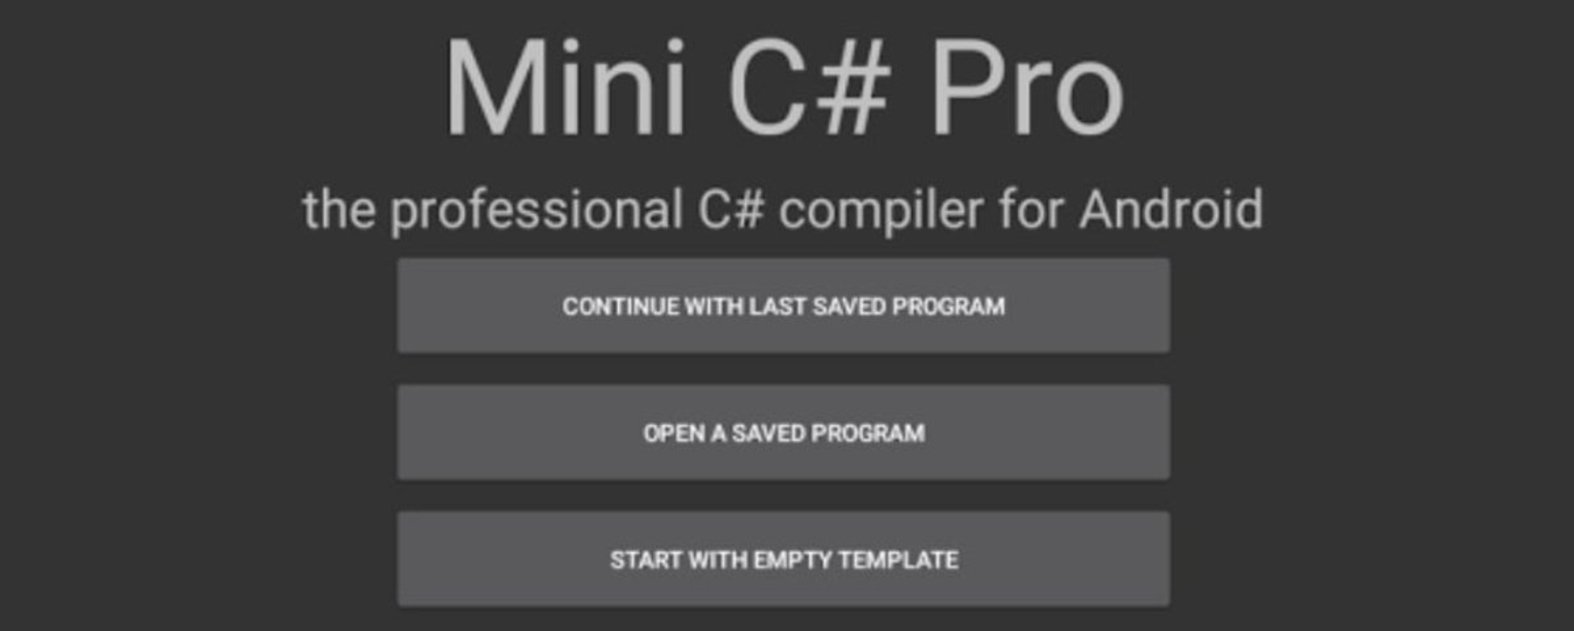 Mini C#Pro